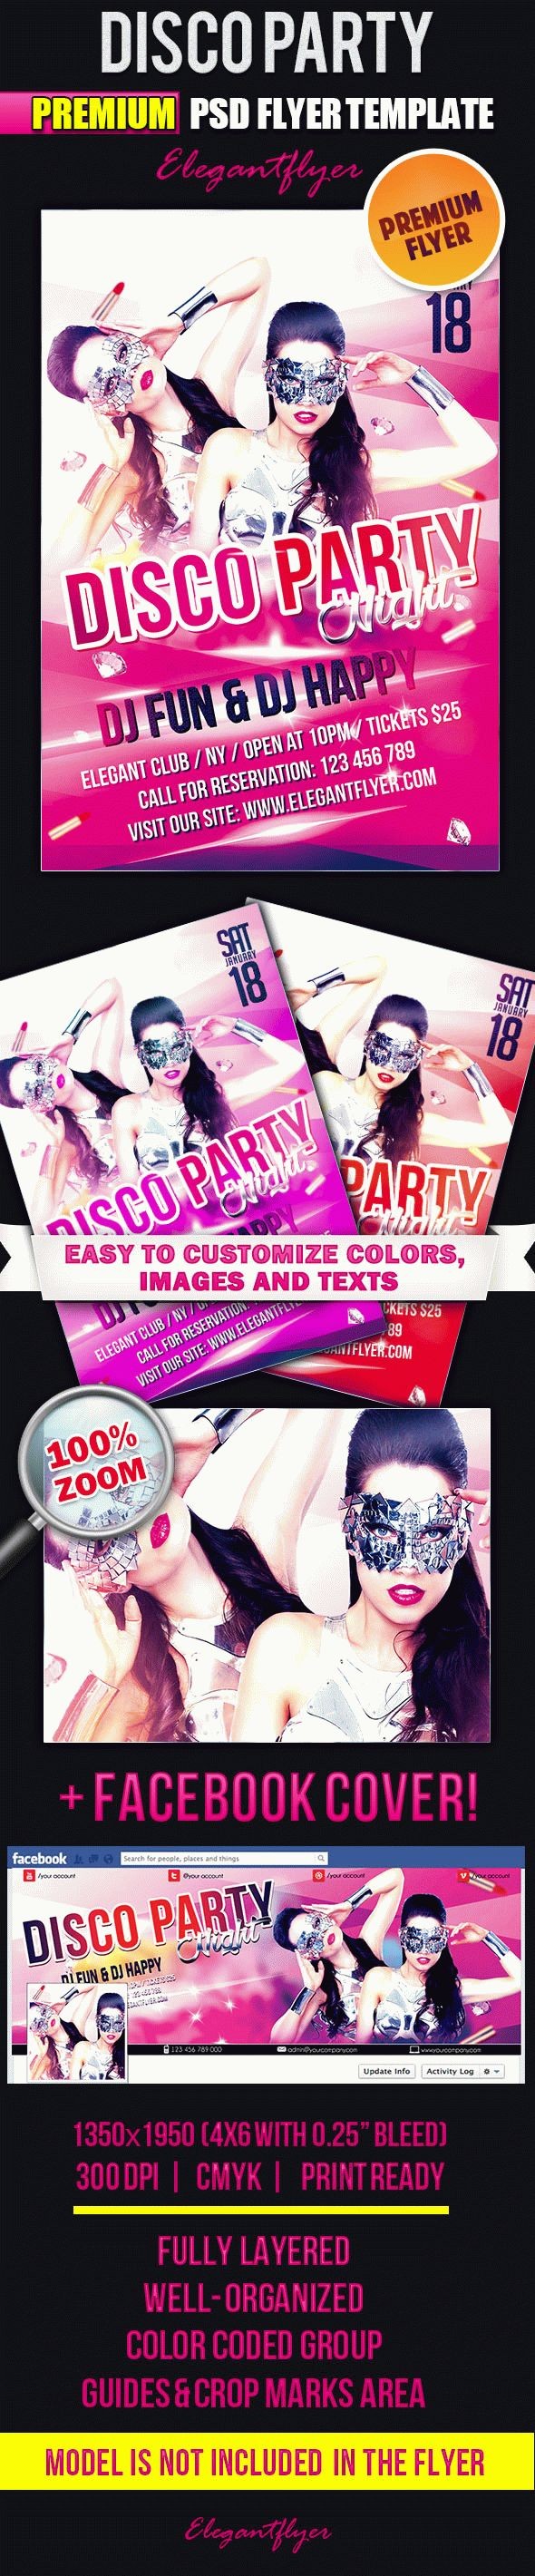 Disco Party Flyer by ElegantFlyer